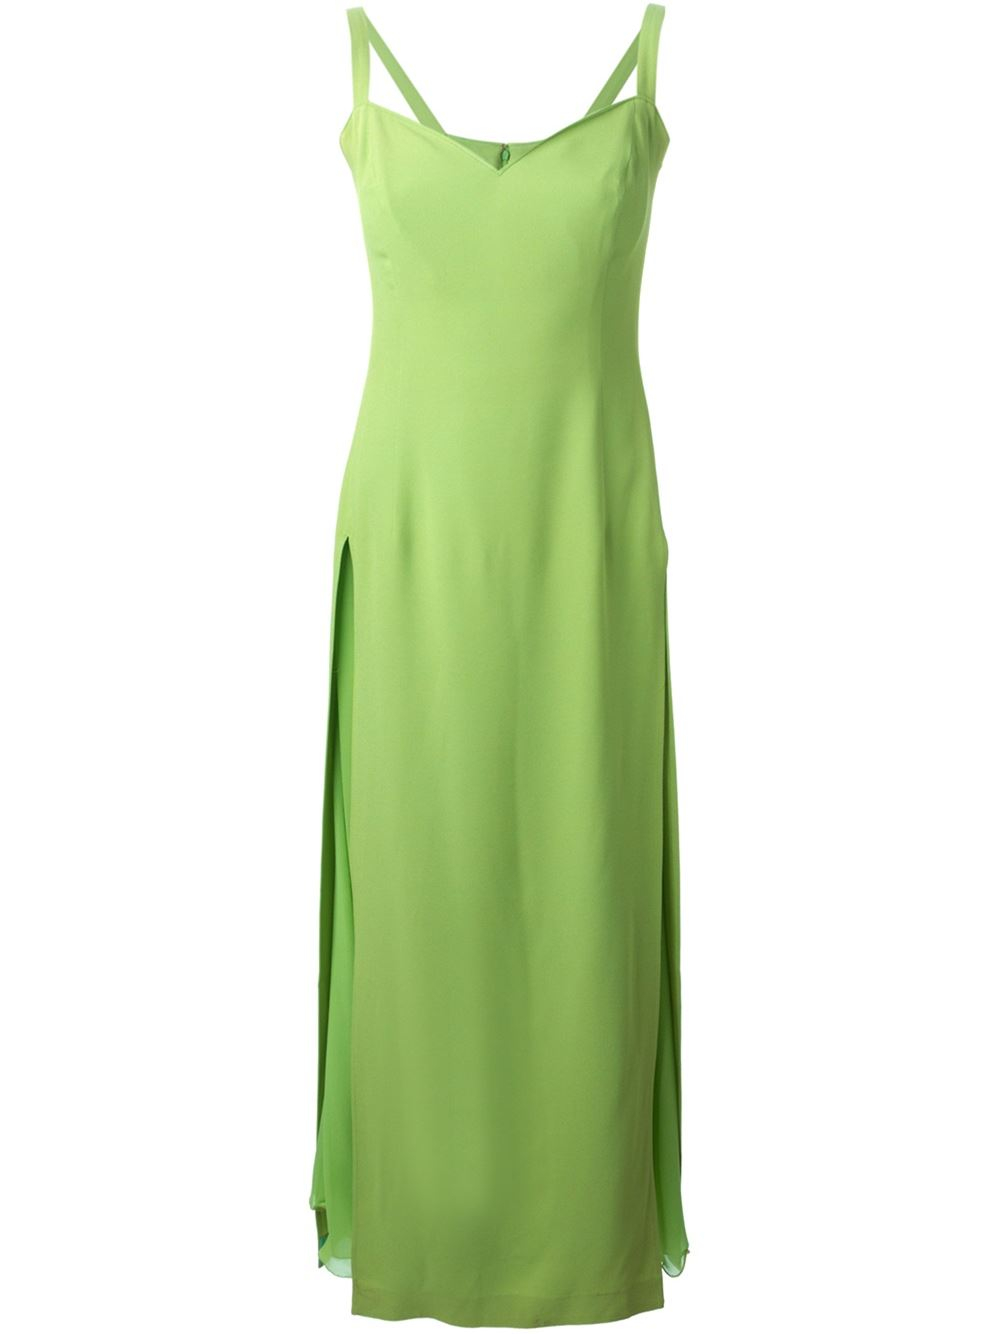 Versace Side Slit Dress in Green | Lyst